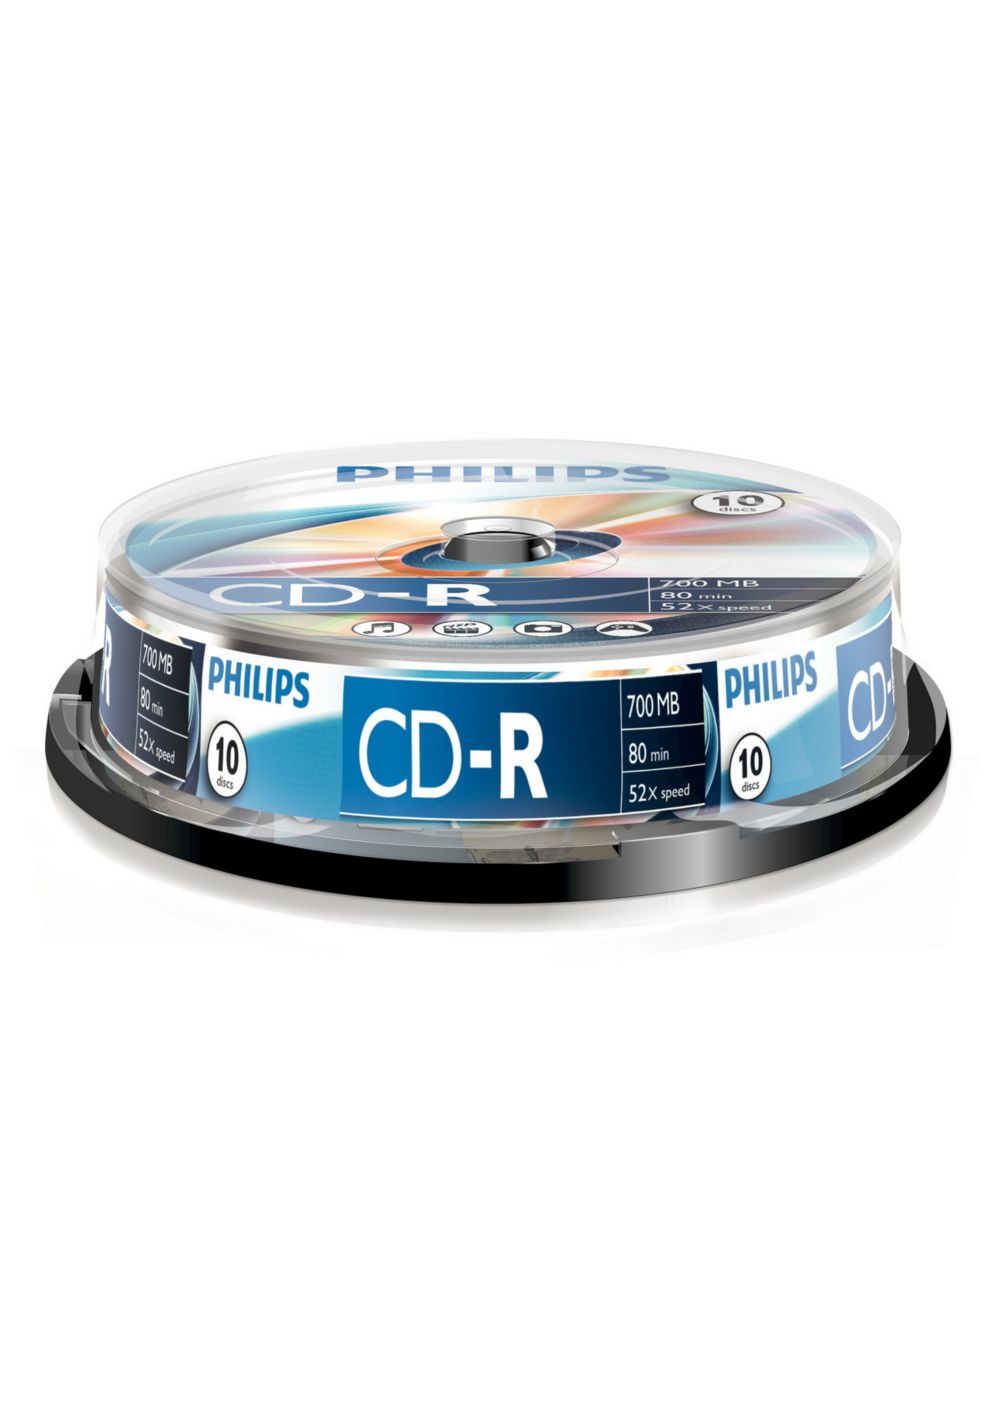 Image of CD-R 700mb 52x Spindel 10st